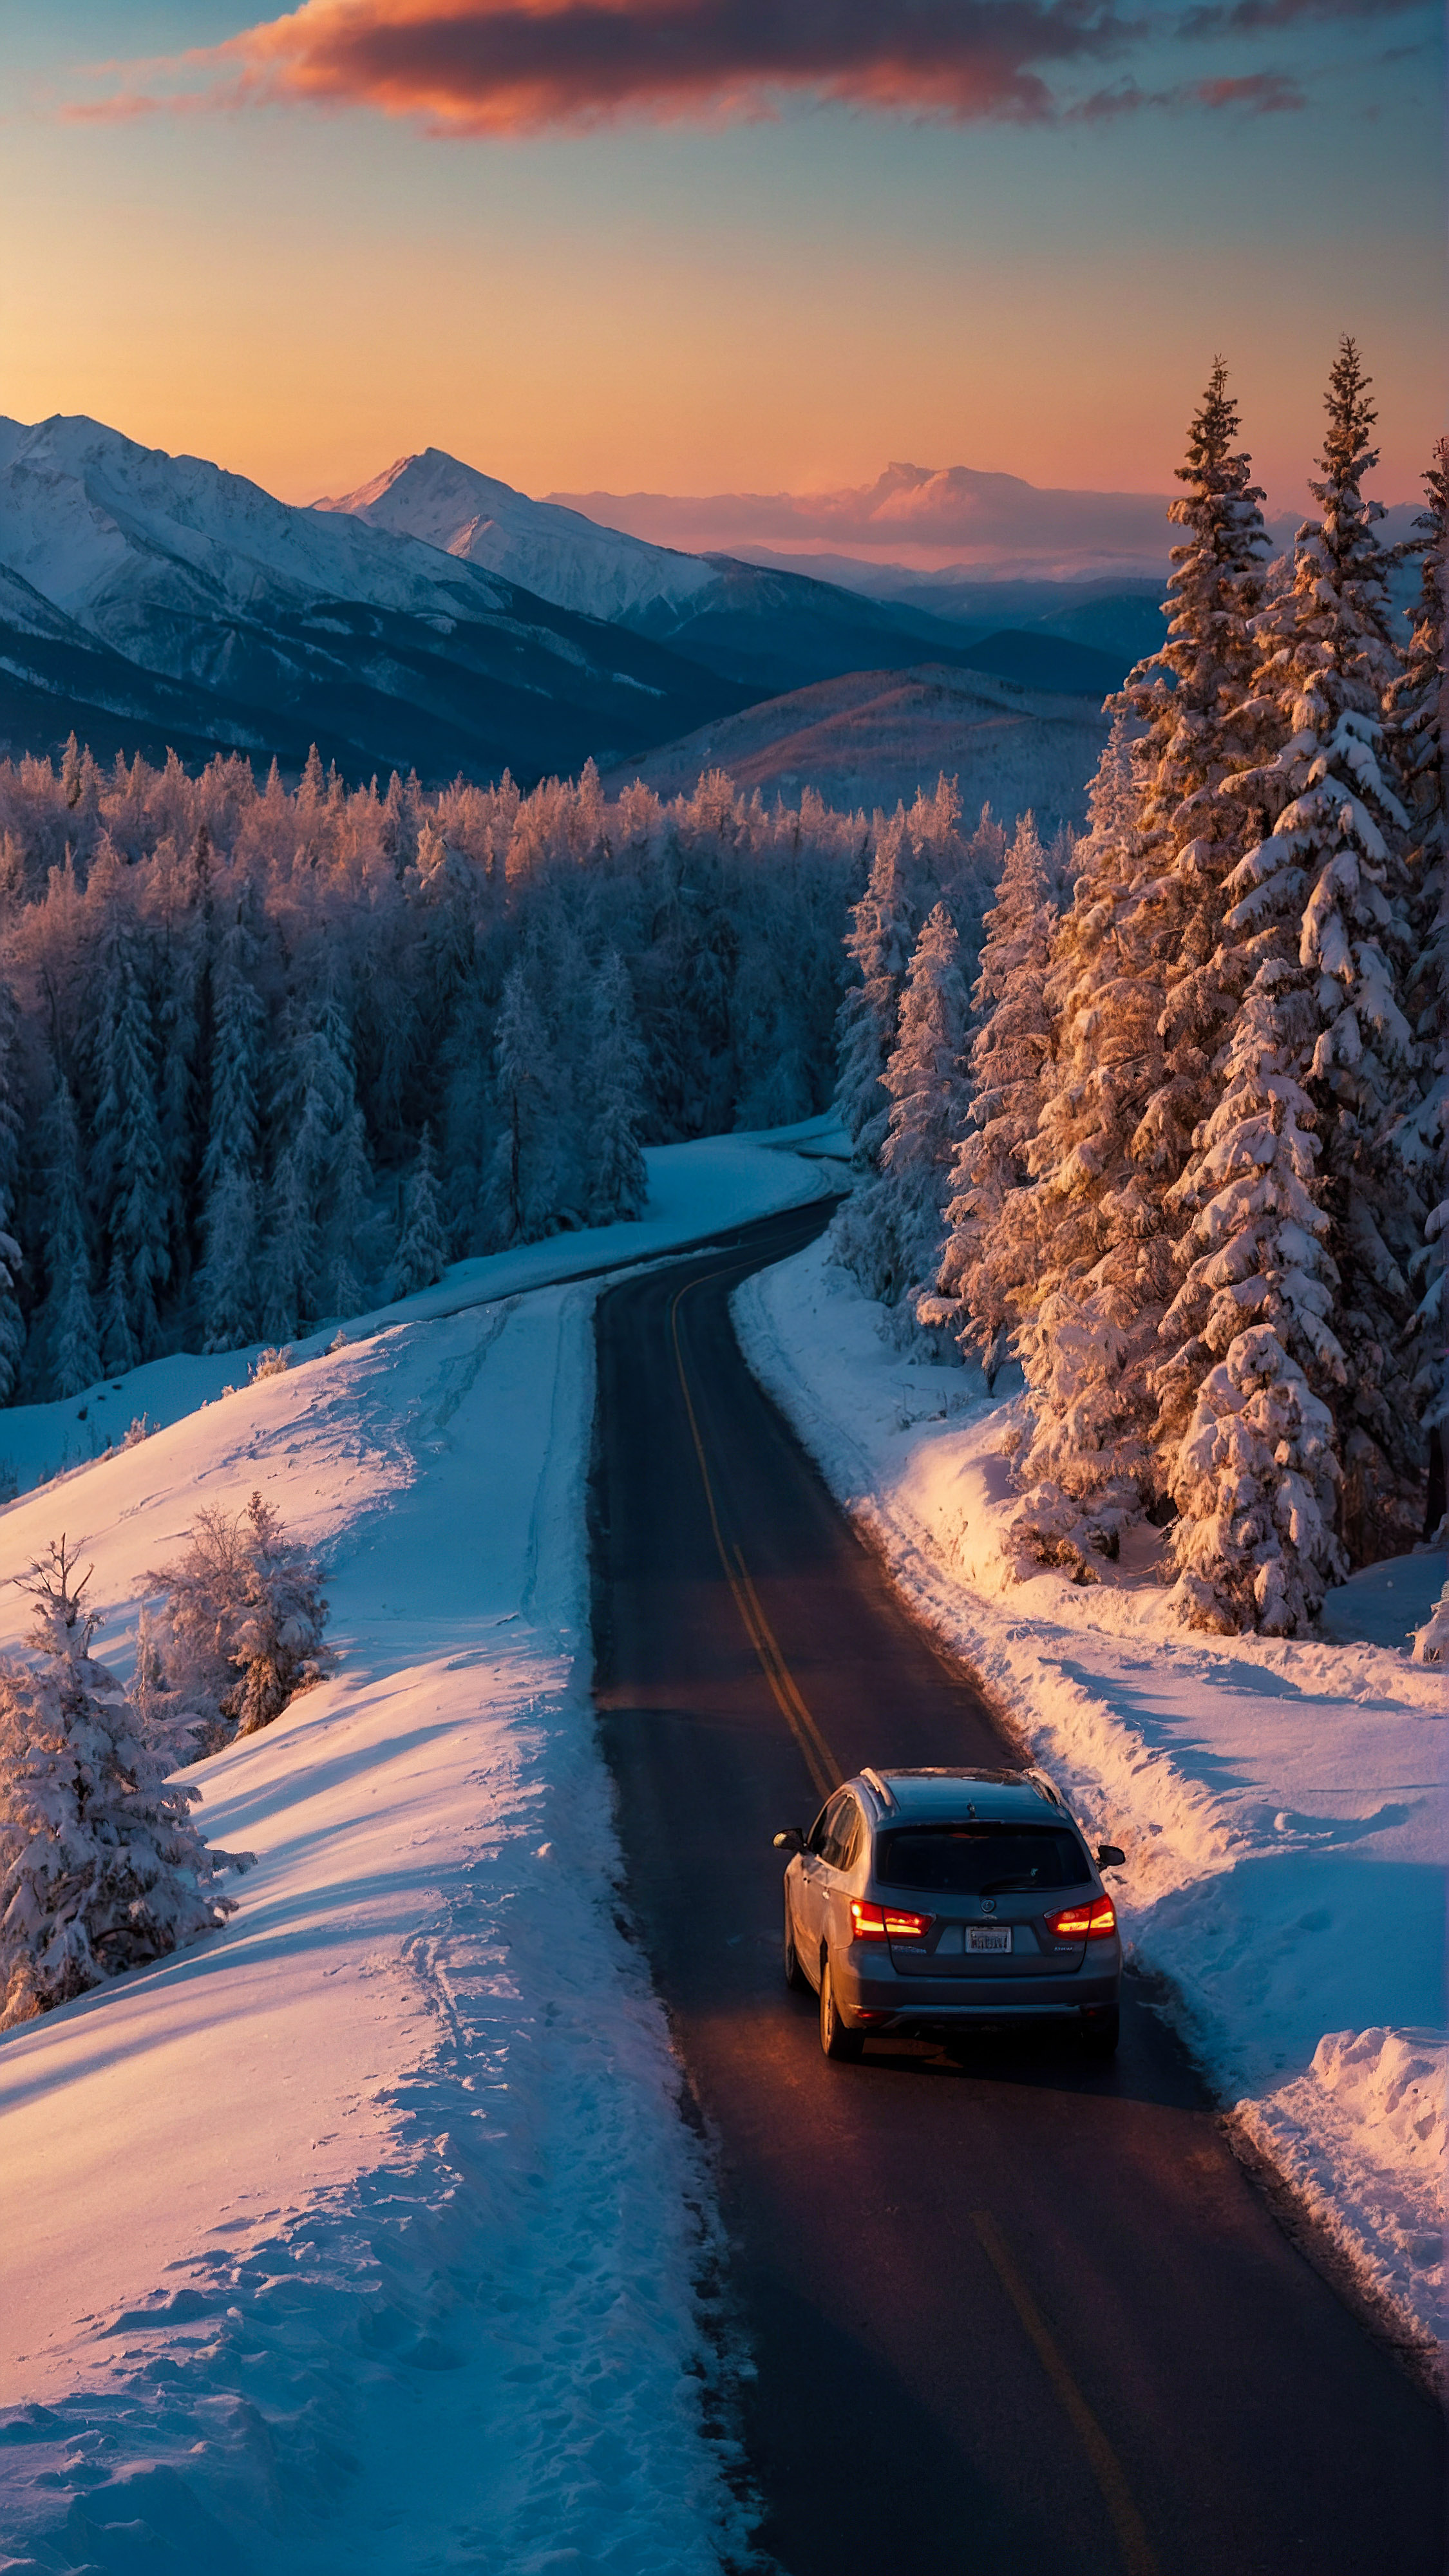 Téléchargez cet fond d'écran style et esthétique pour iPhone, un paysage hivernal vibrant au crépuscule, présentant une route sinueuse avec une voiture en déplacement, entourée d'arbres et de montagnes couverts de neige sous la lueur du soleil couchant.